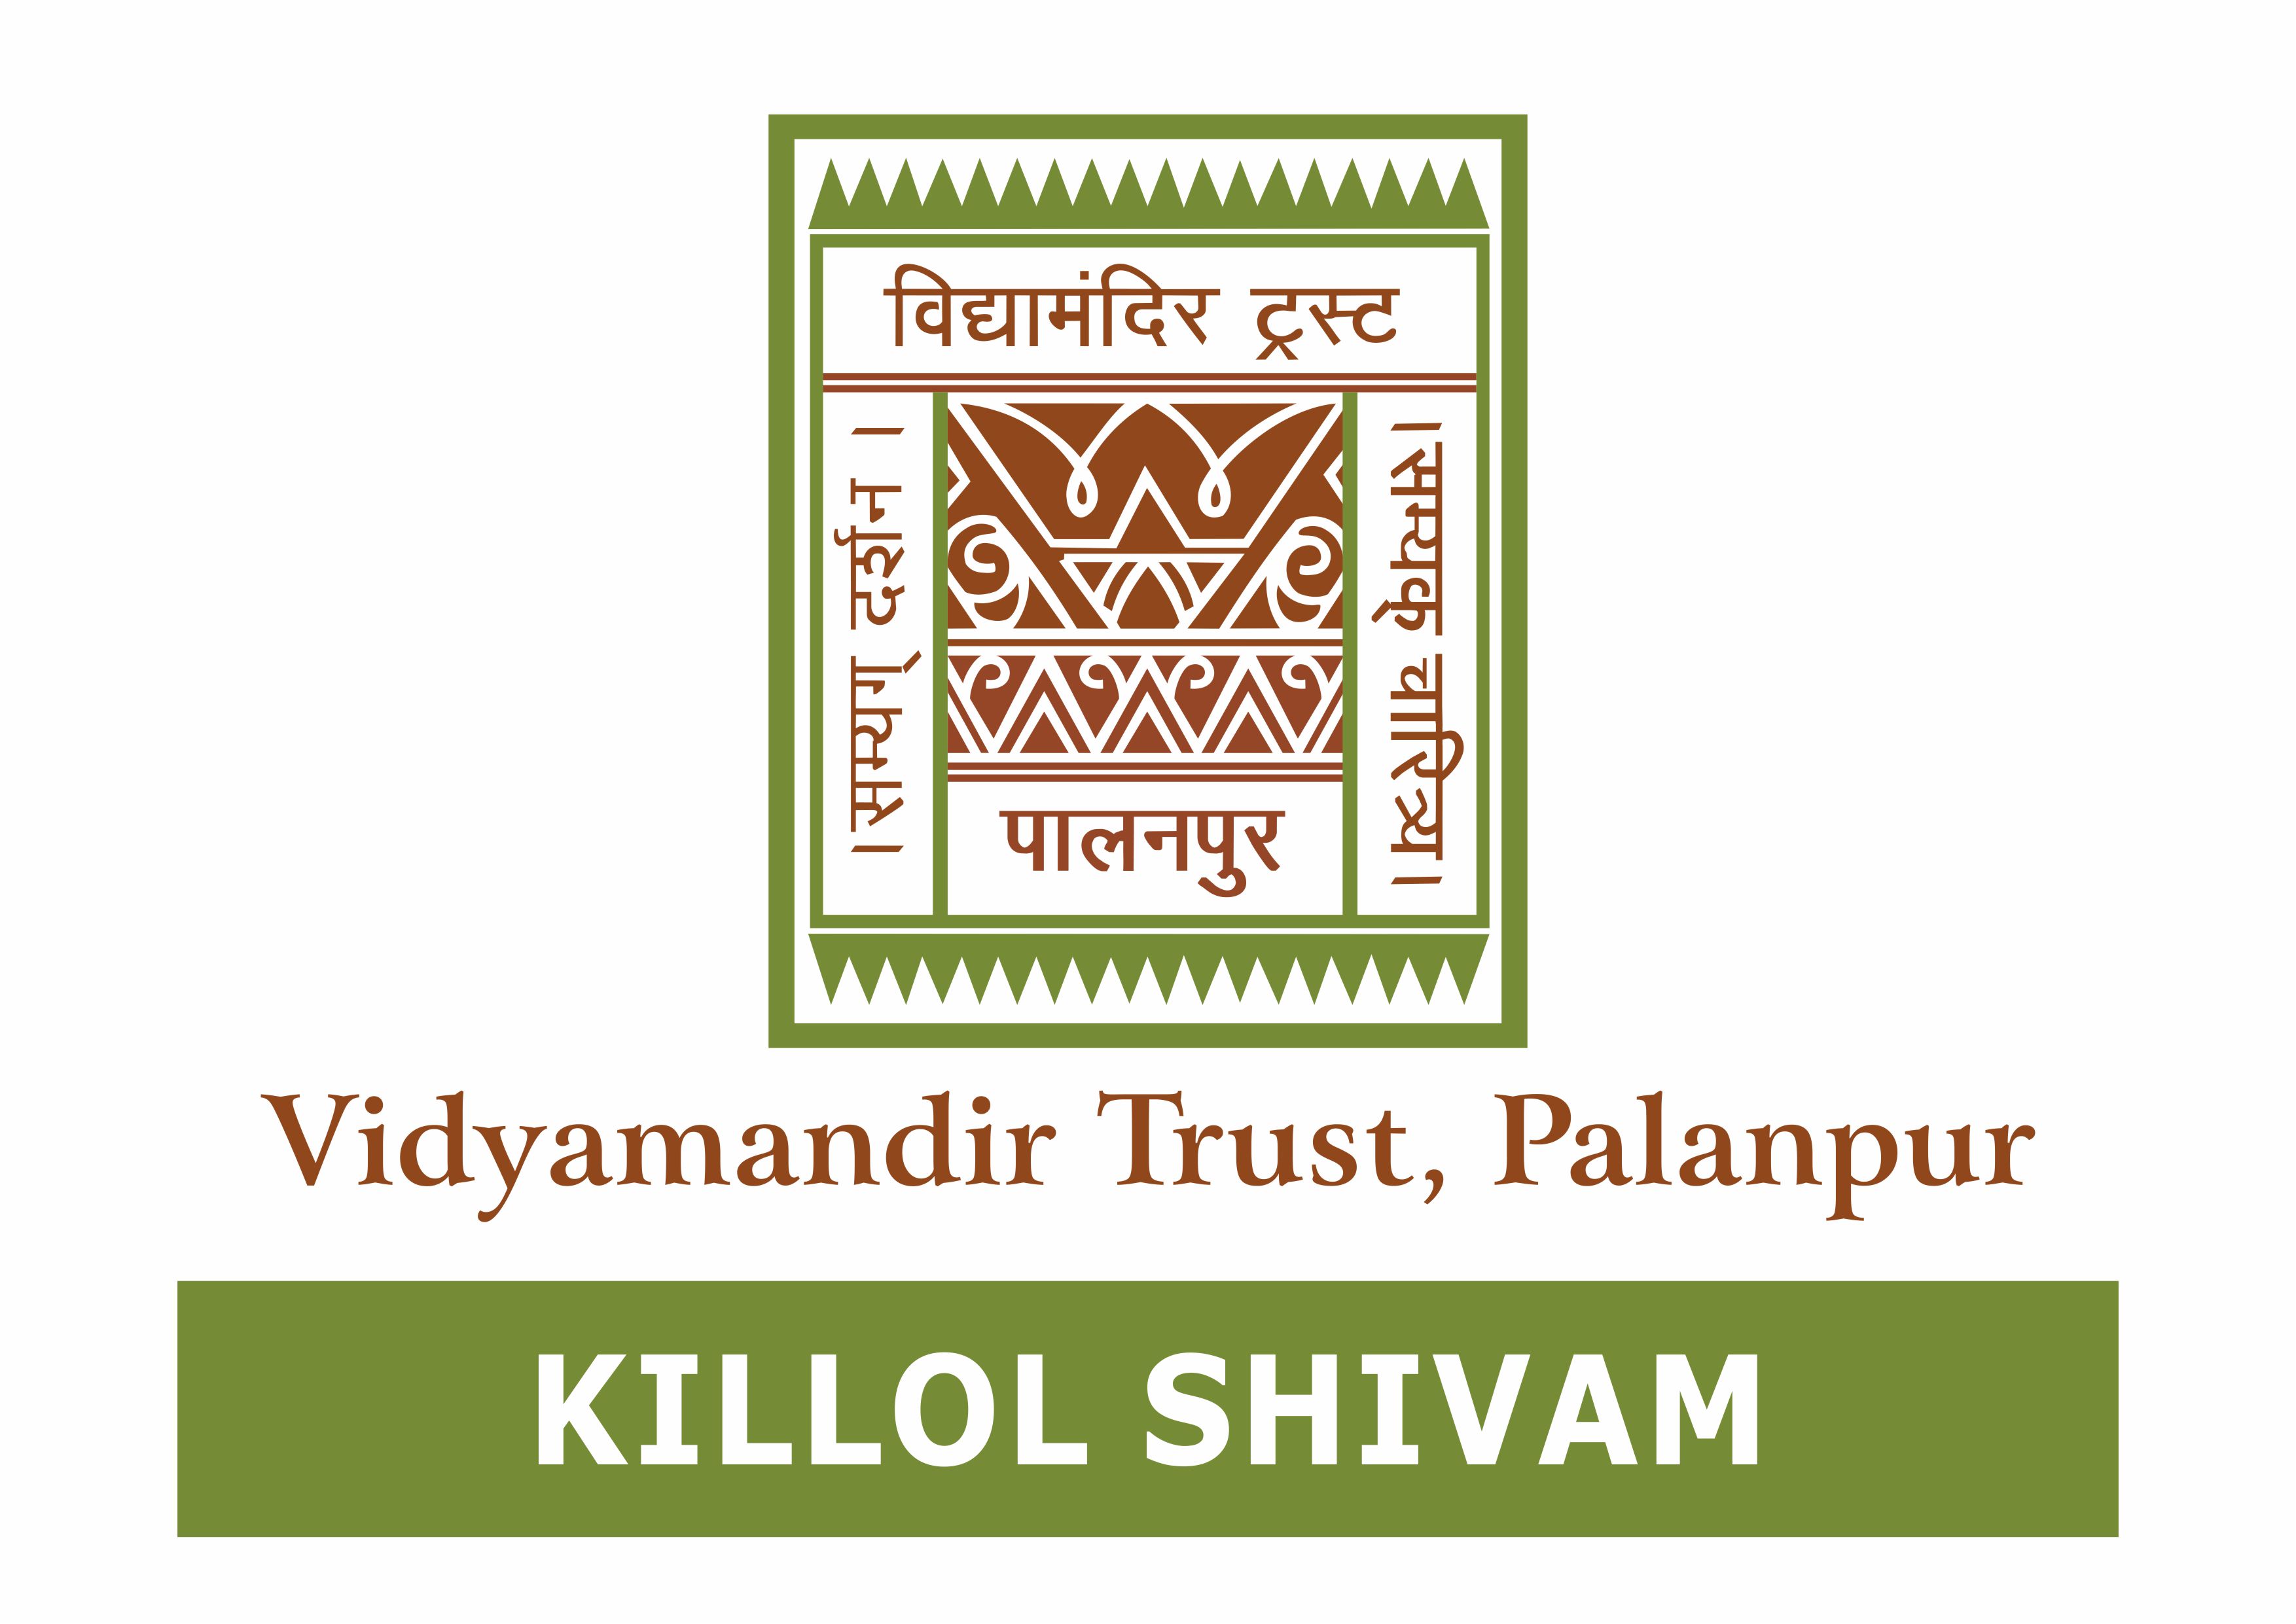 Killol Shivam - Vidyamandir Trust, Palanpur